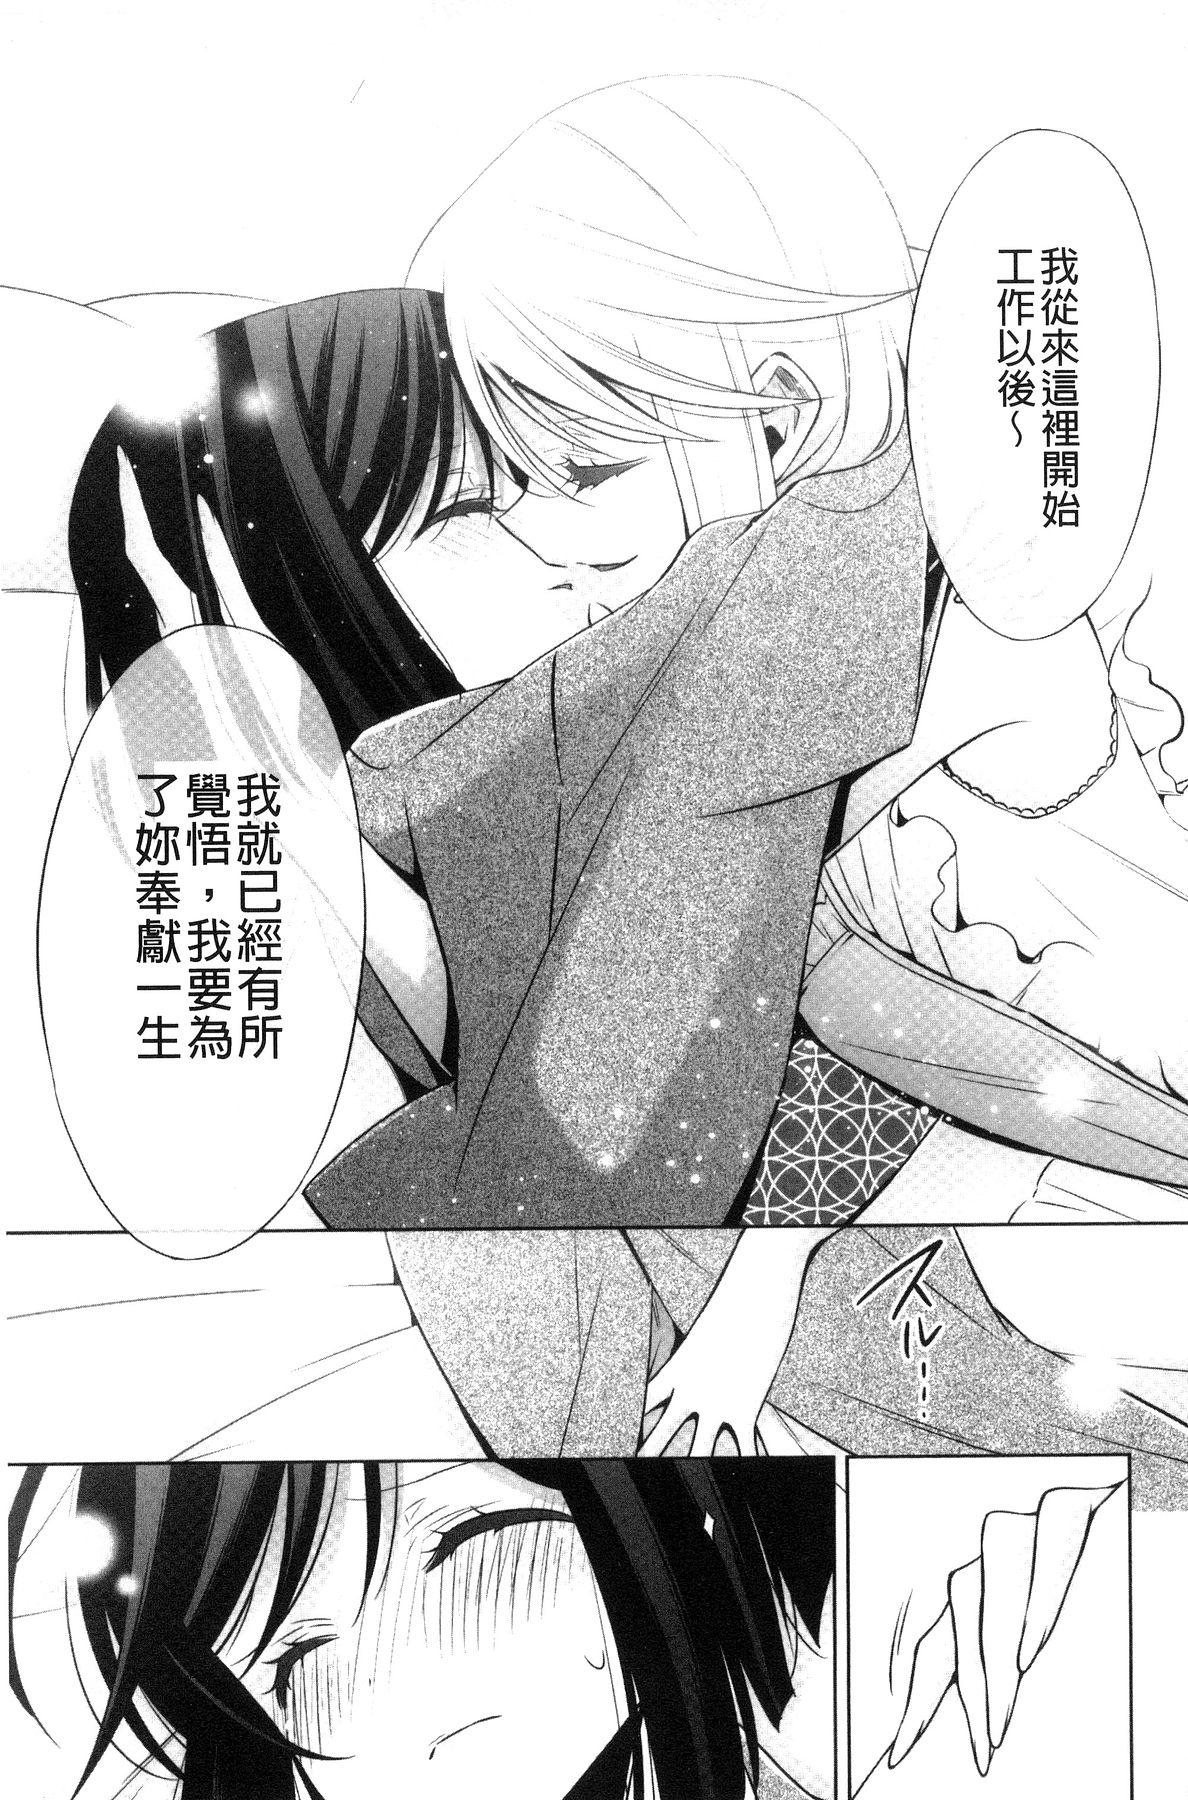 Kanojo to Watashi no Himitsu no Koi - She falls in love with her 192